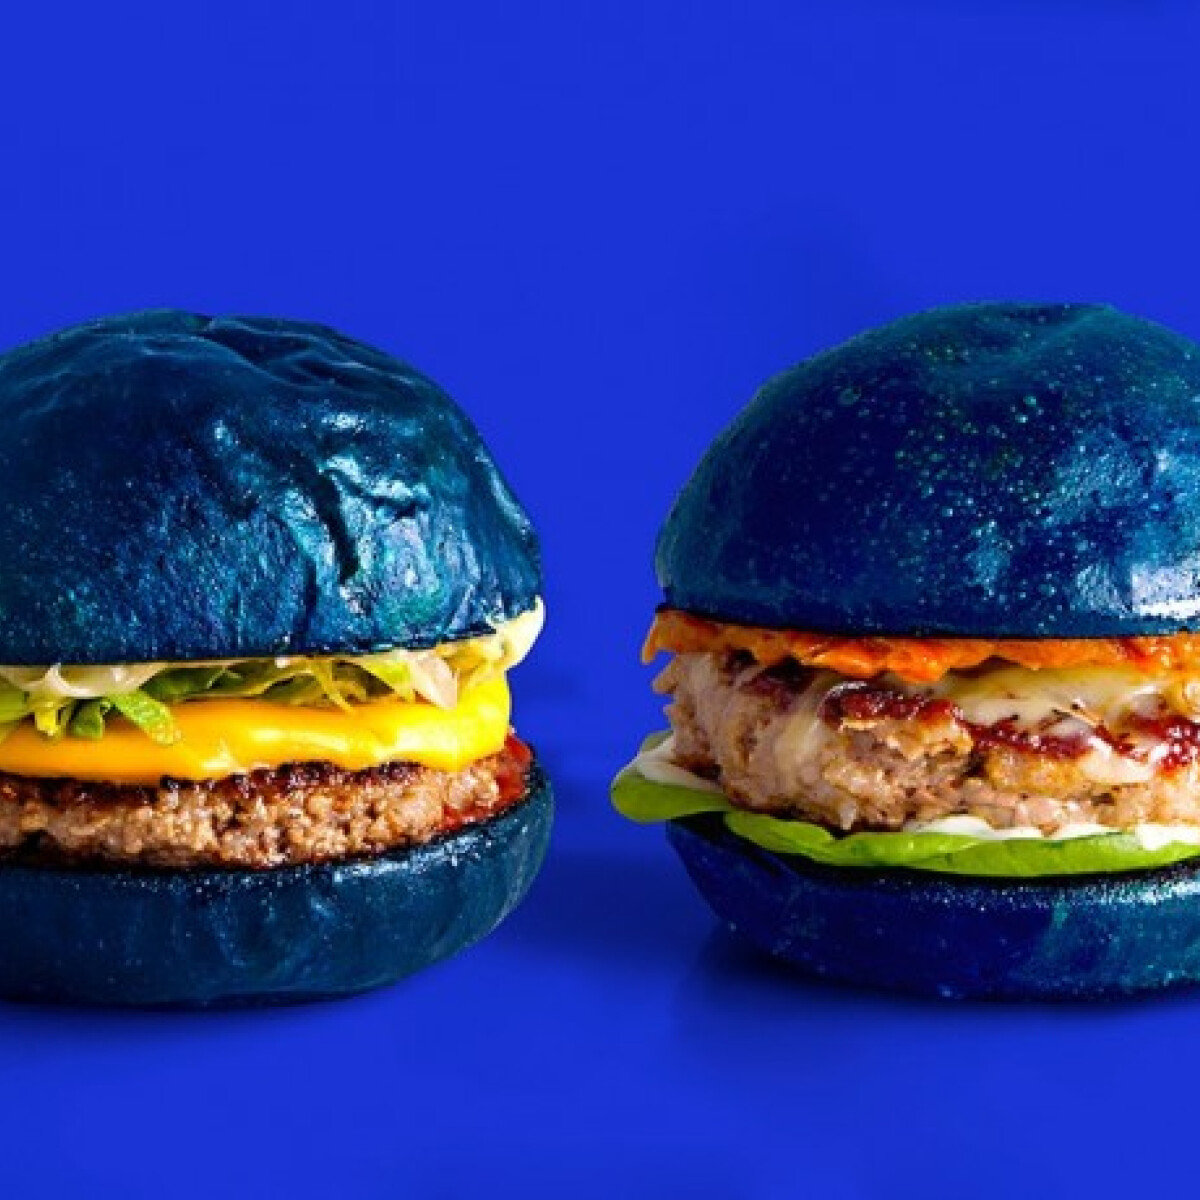 Kék hamburgerrel rukkolt elő a híres francia divatcég - Ez lesz az utolsó nagy dobásuk